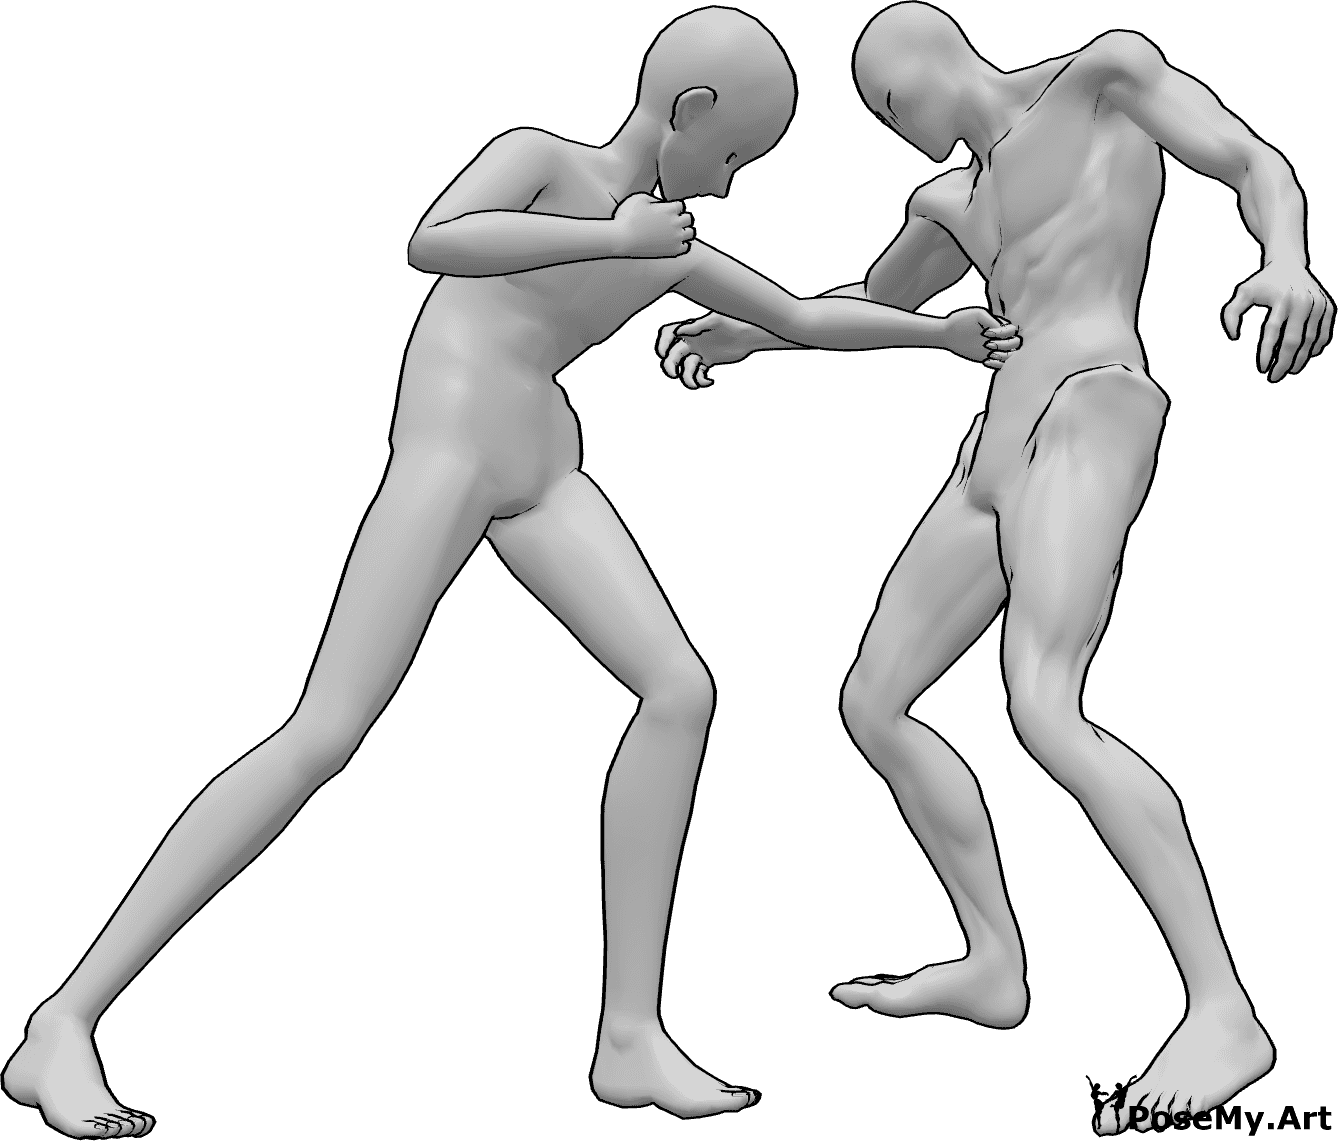 Référence des poses- Pose de l'anime pour le coup de poing dans l'estomac - L'homme animé donne un coup de poing à l'ennemi dans l'estomac avec sa main gauche.